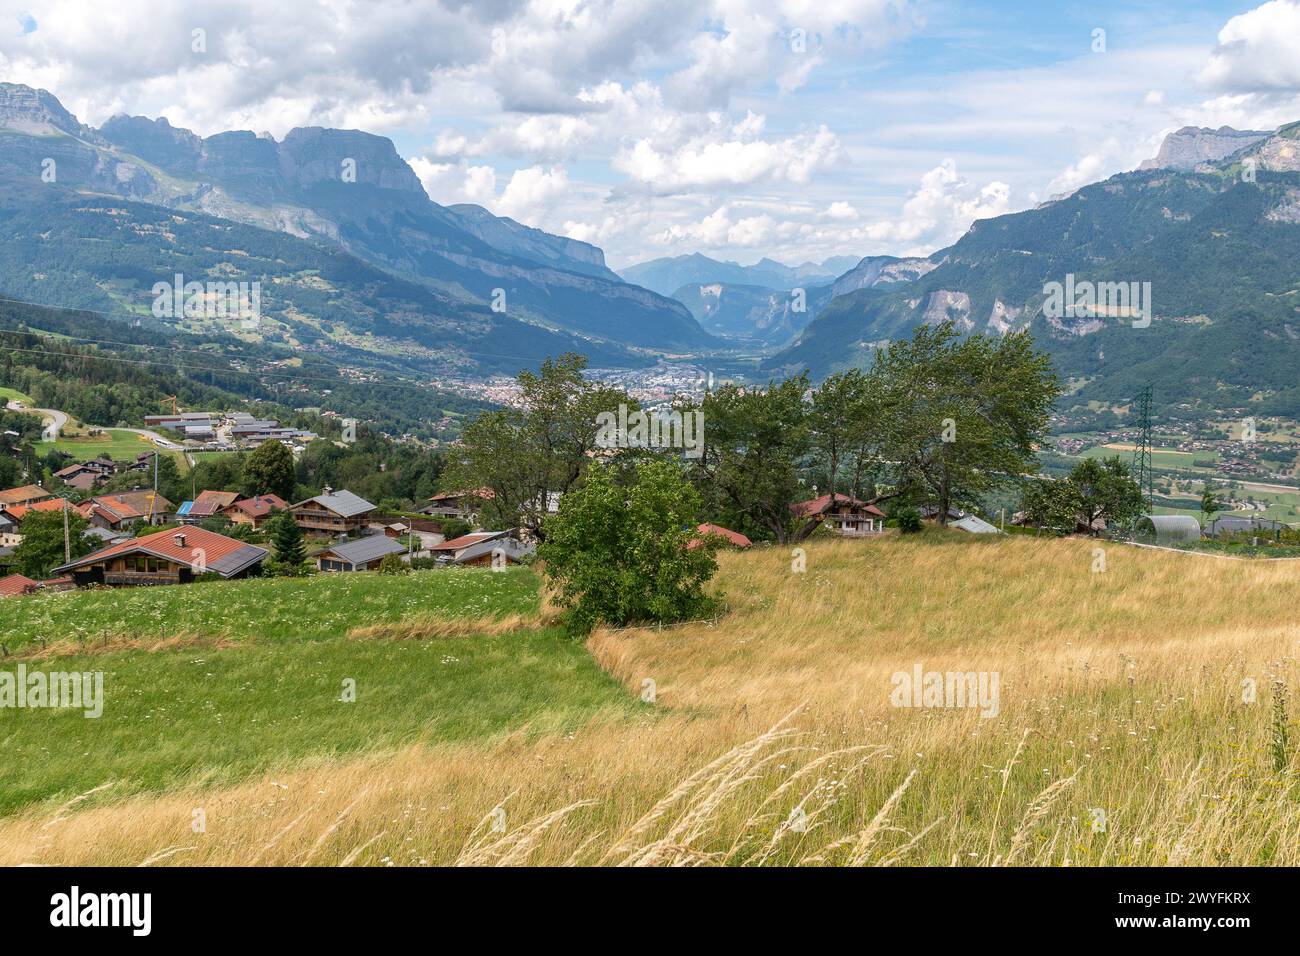 Vista elevata della valle dell'Arve nel dipartimento francese dell'alta Savoia, formato dal corso superiore del fiume Arve, Alvernia Rodano Alpes, Francia Foto Stock